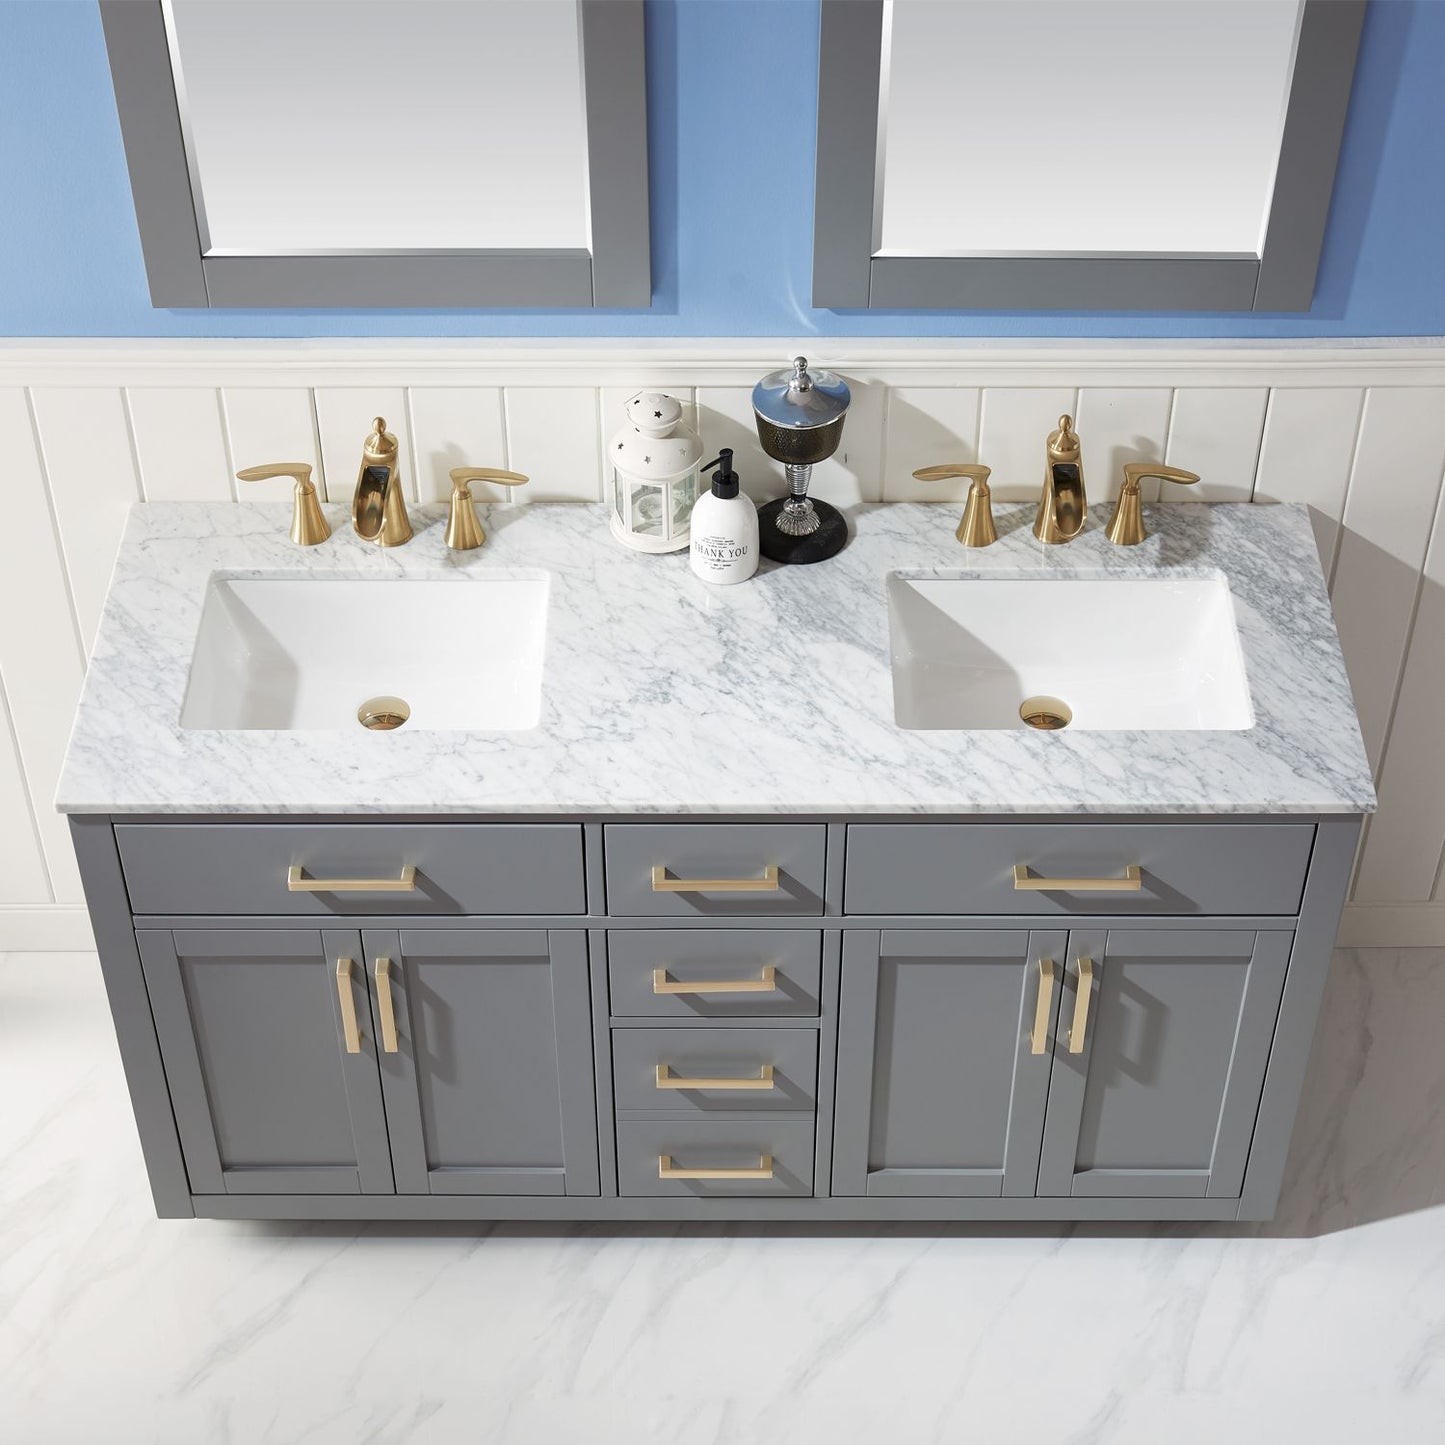 Altair Ivy 60" Double Bathroom Vanity Set Countertop with Mirror - Luxe Bathroom Vanities